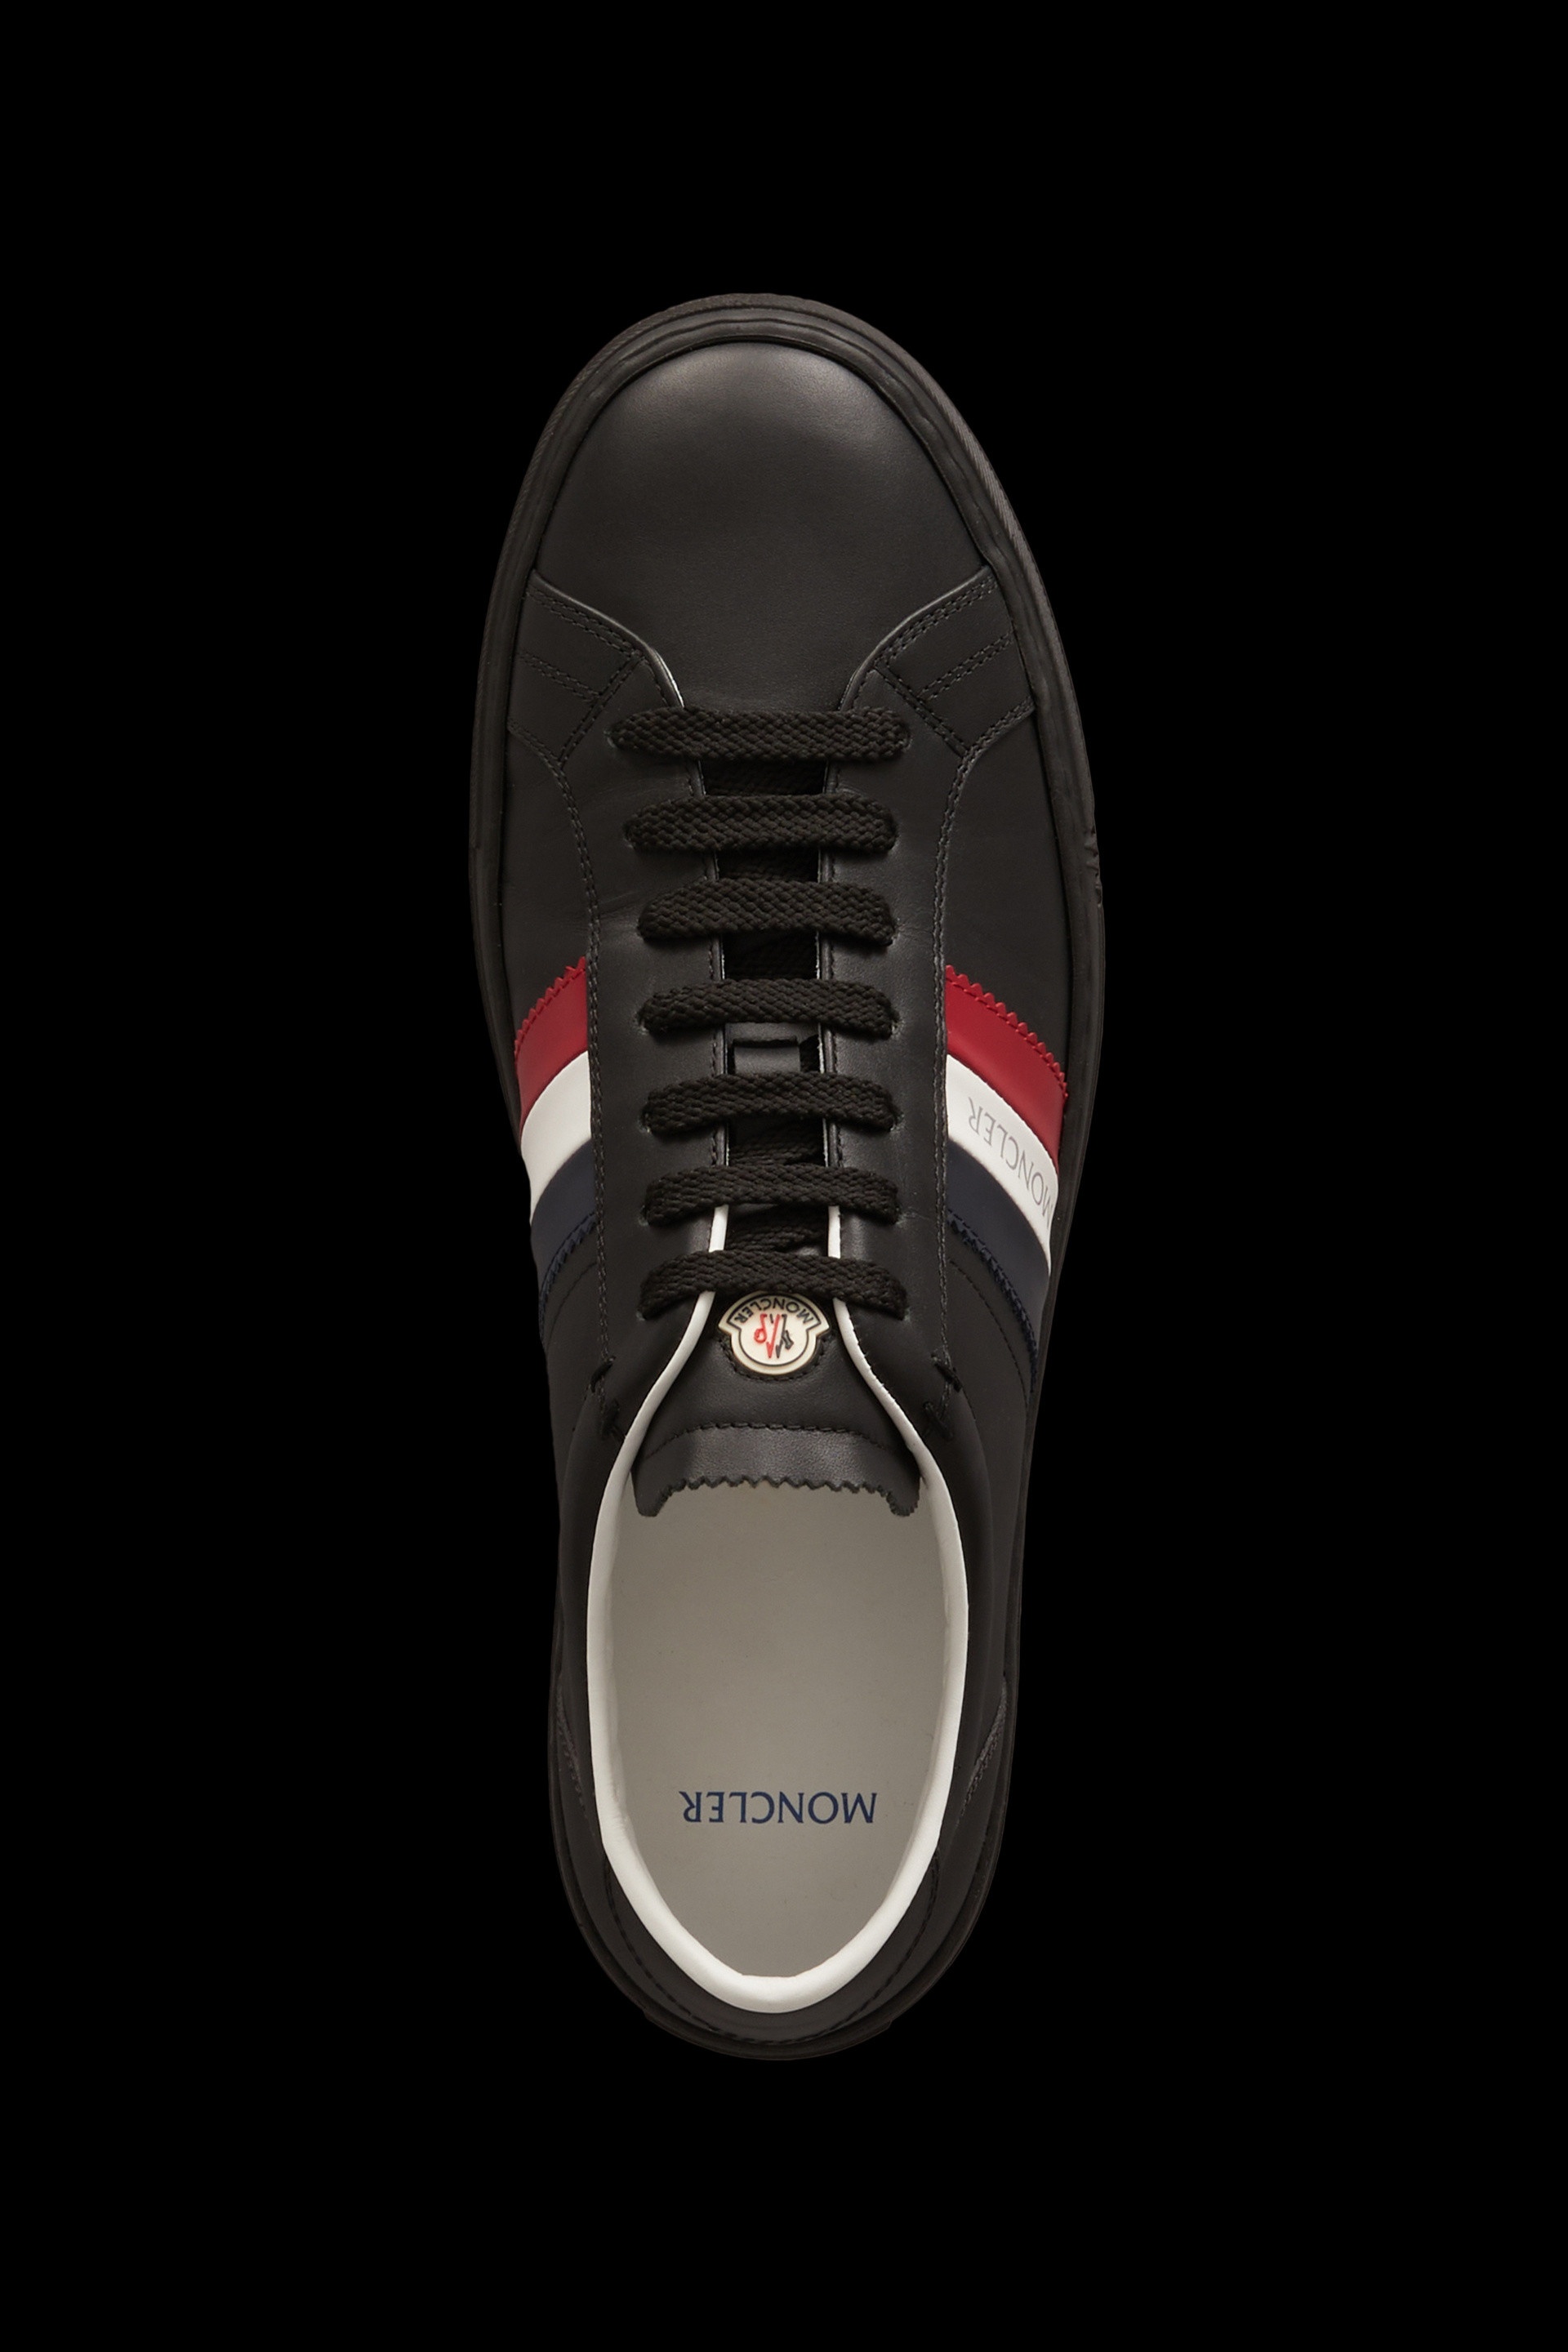 New Monaco Sneakers - 3